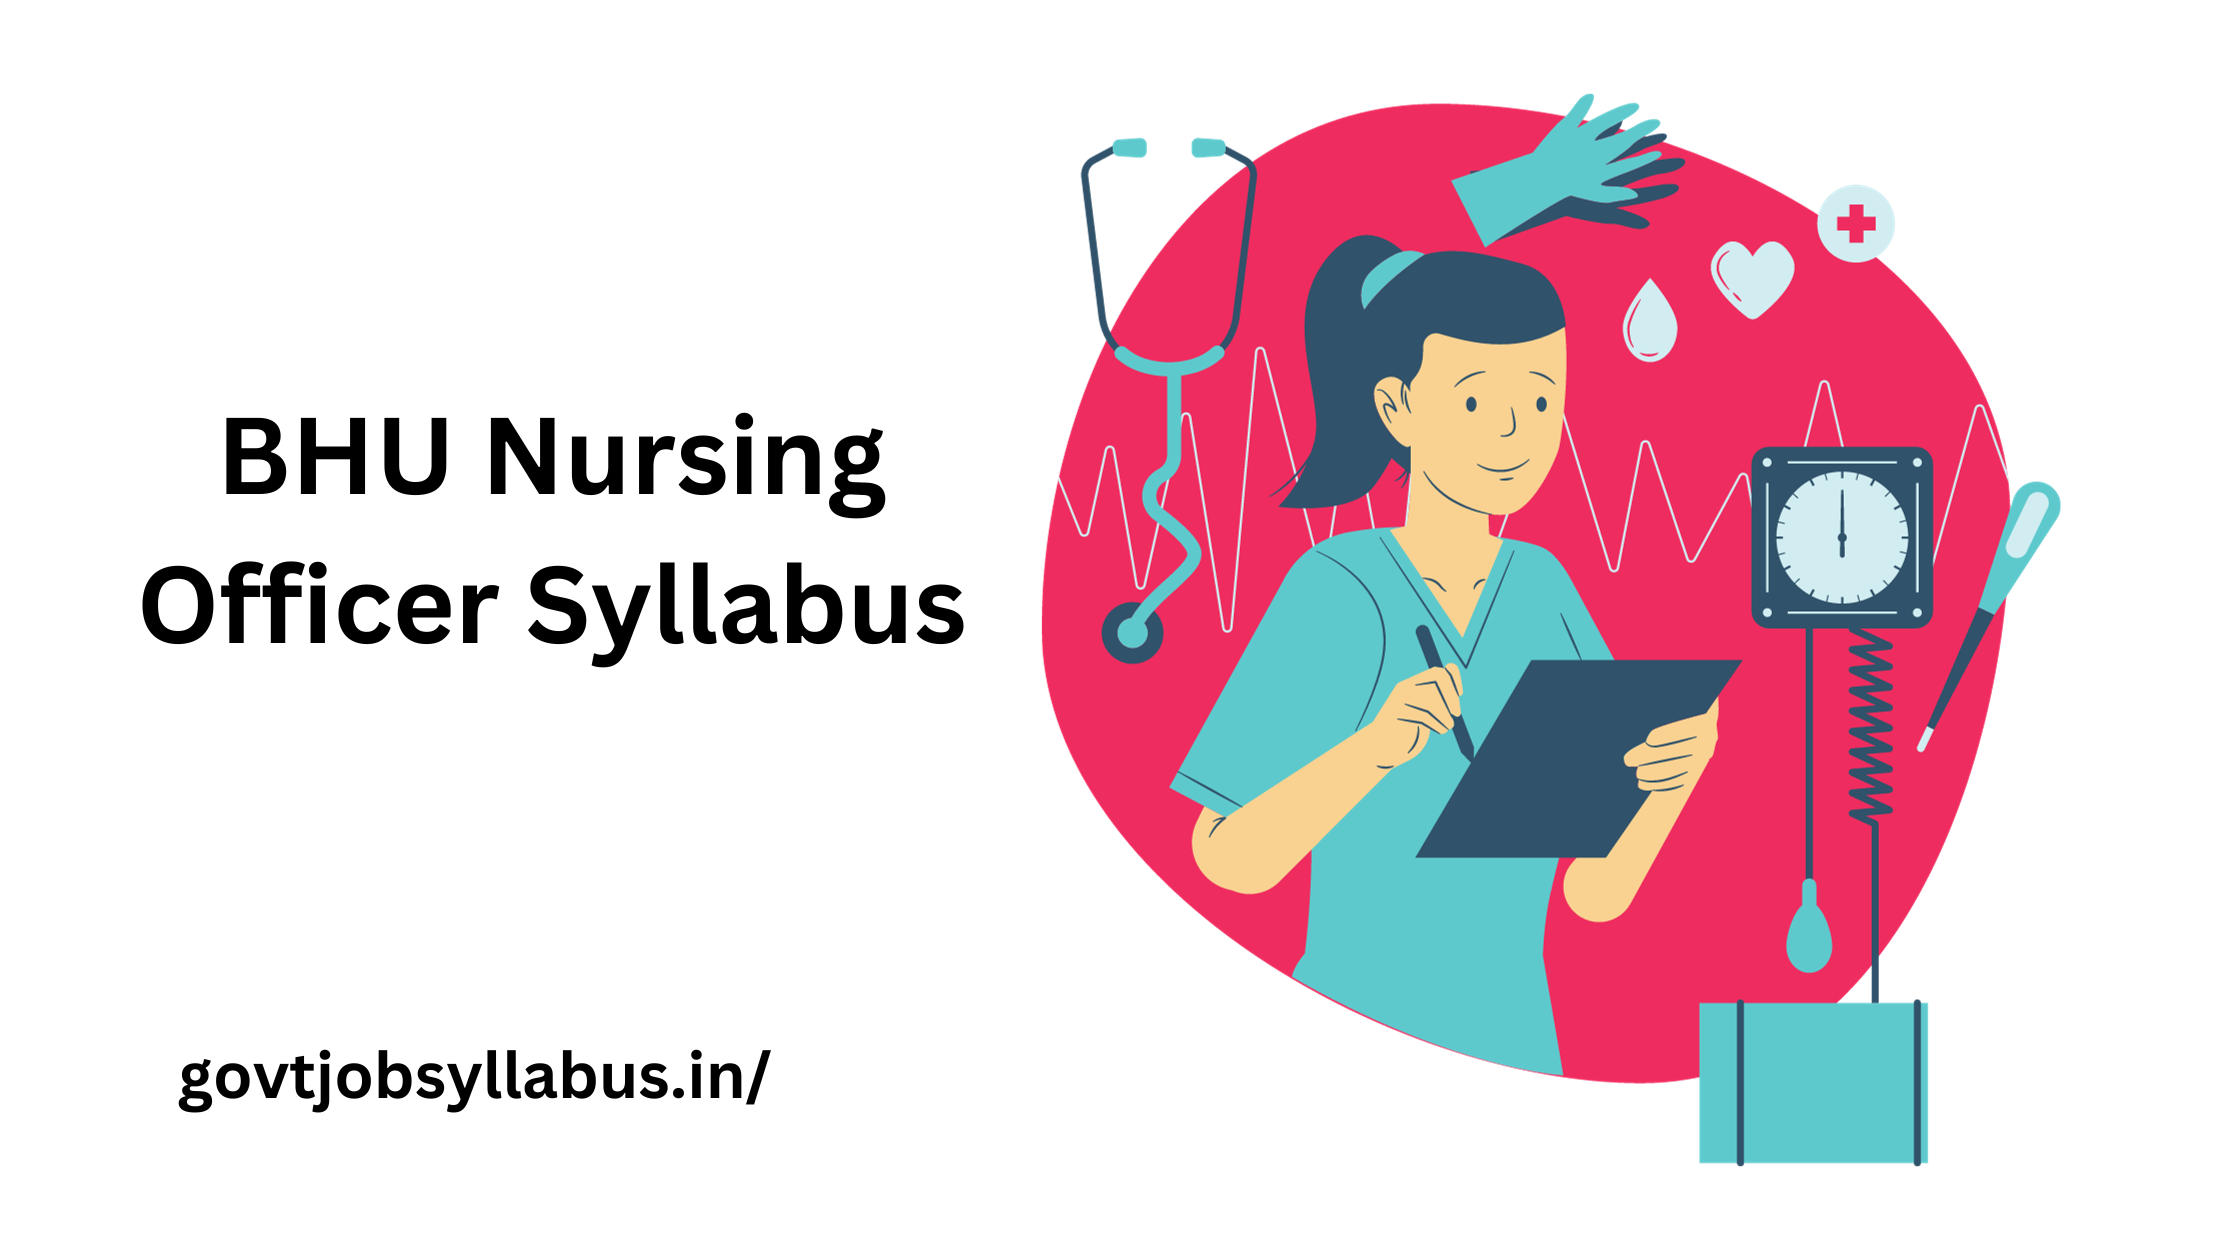 BHU Nursing Officer Syllabus